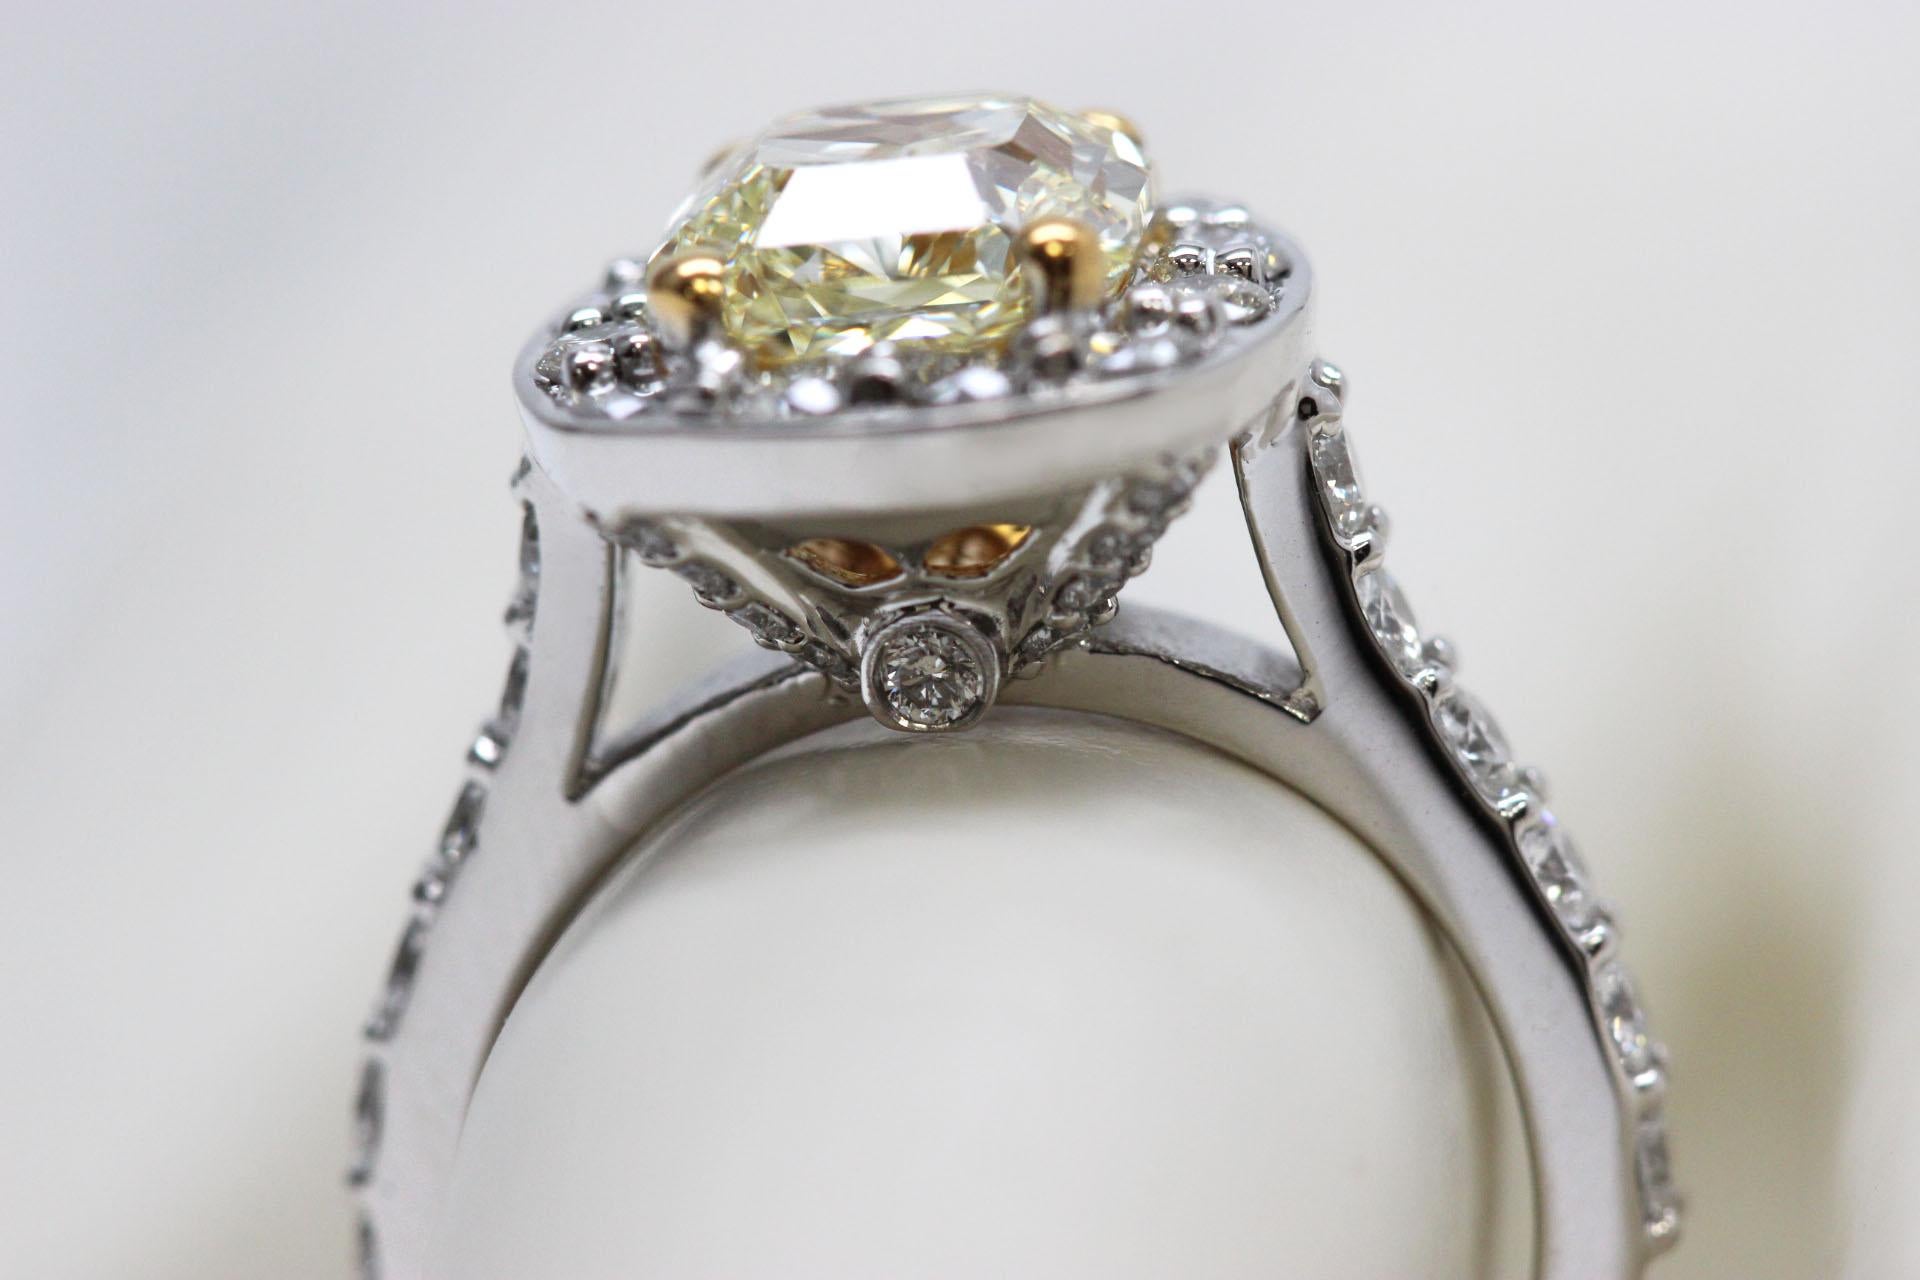 Bague de fiançailles en diamant de 3 carats avec une pierre centrale jaune clair fantaisie VVS1 certifiée par le GIA. Bague de fiançailles de halo en diamant jaune clair naturel de 3ct de taille radieuse sur un anneau en platine.

Montée sur un